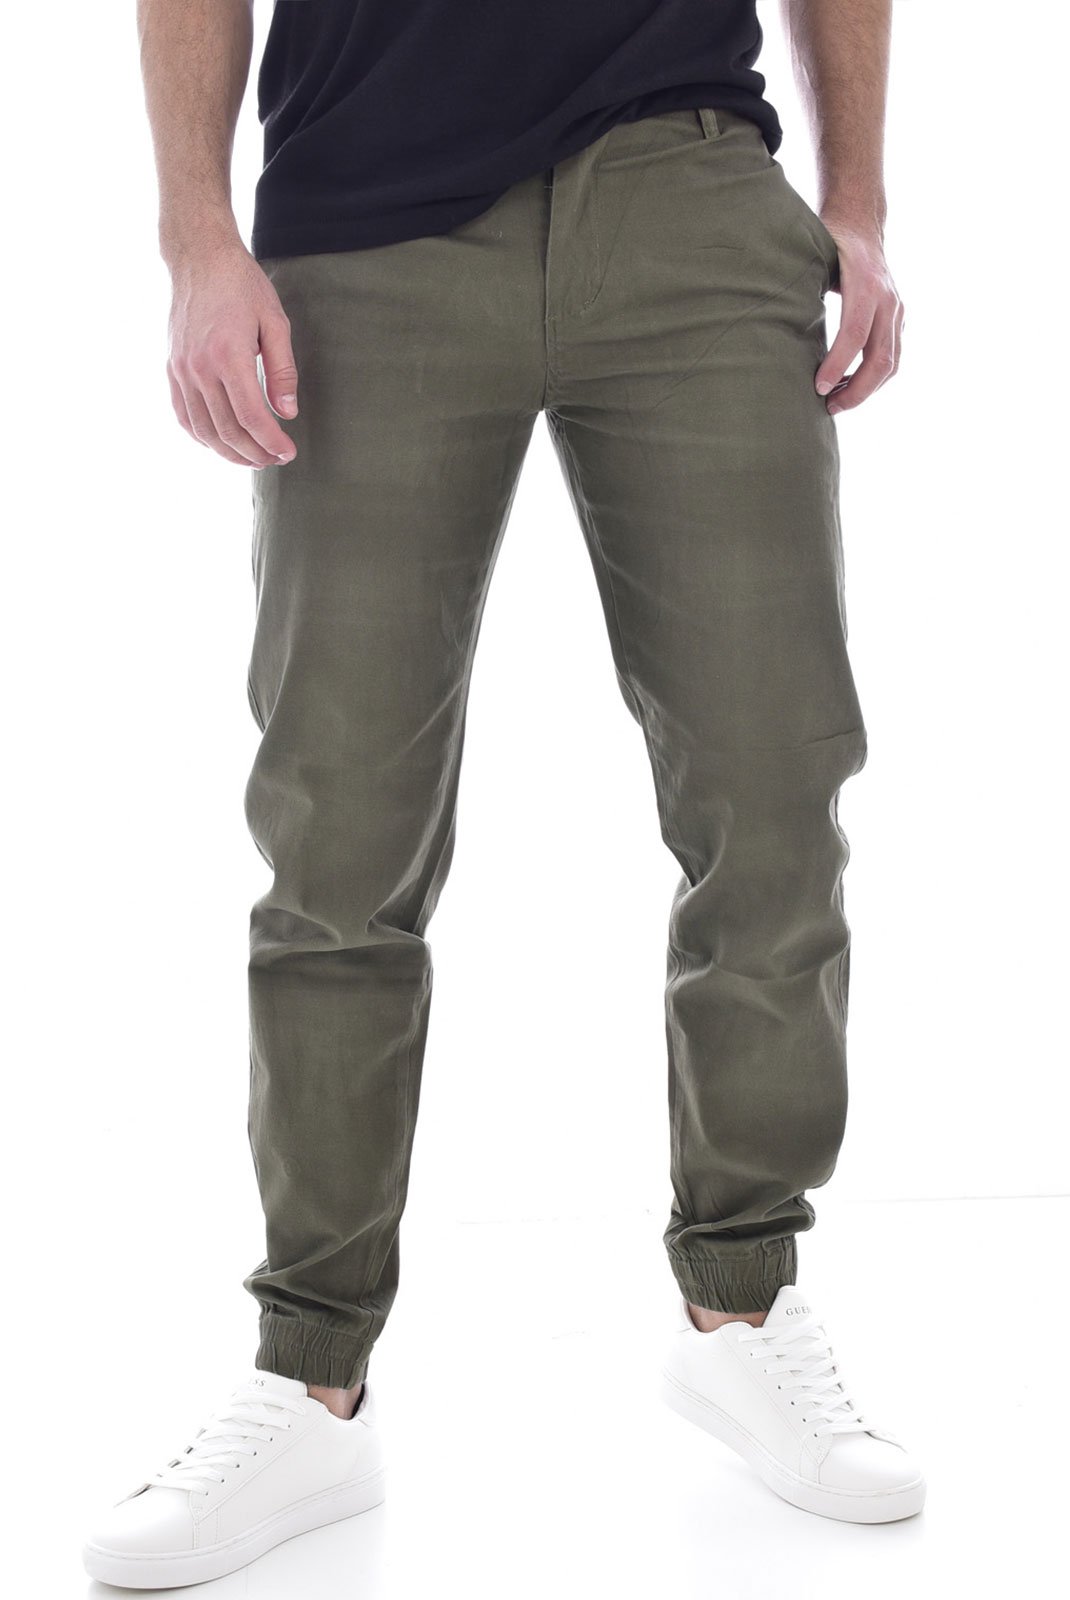 Pantalons sport/streetwear  Giani 5 D188 KAKI